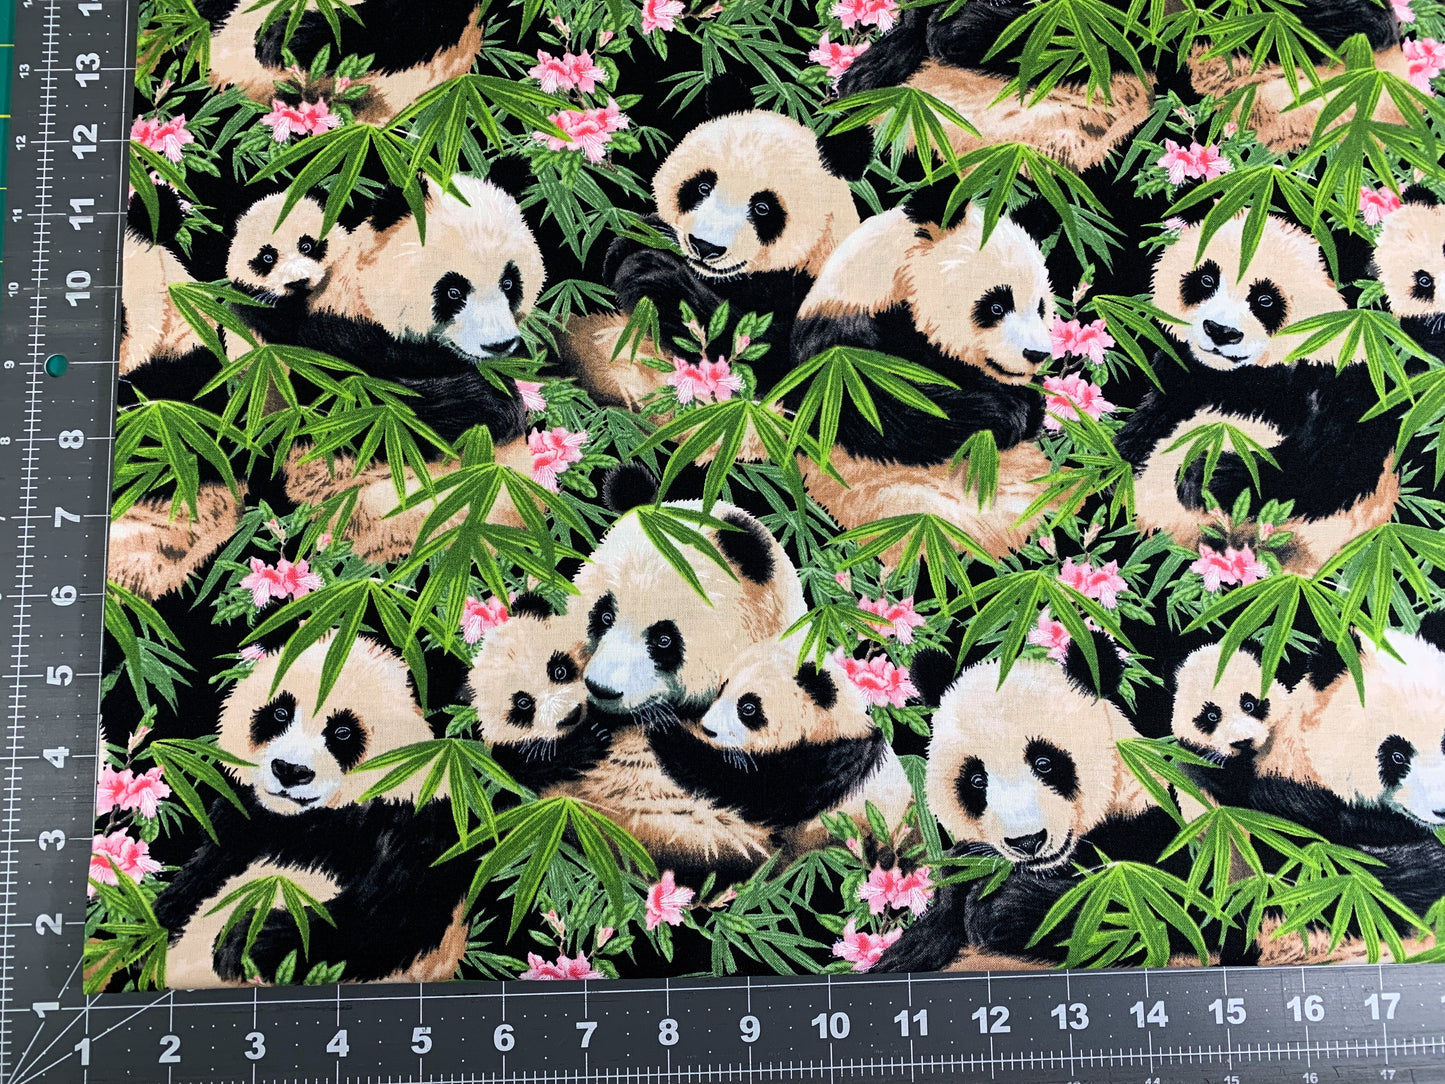 Panda bear fabric 1230 Panda fabric w Pink Flowers